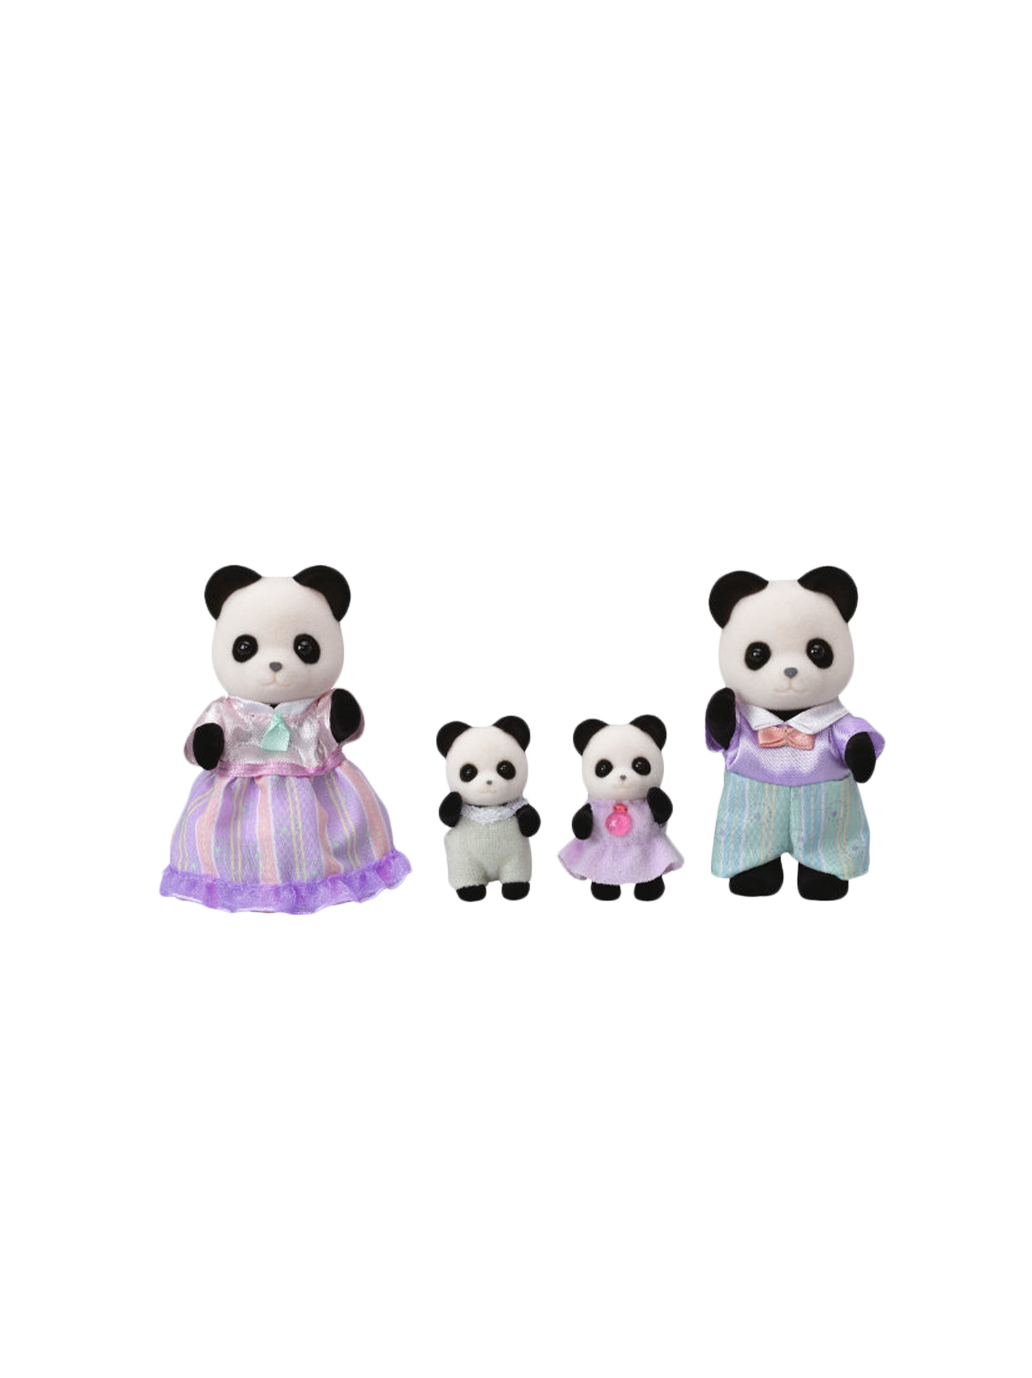 Famille de pandas